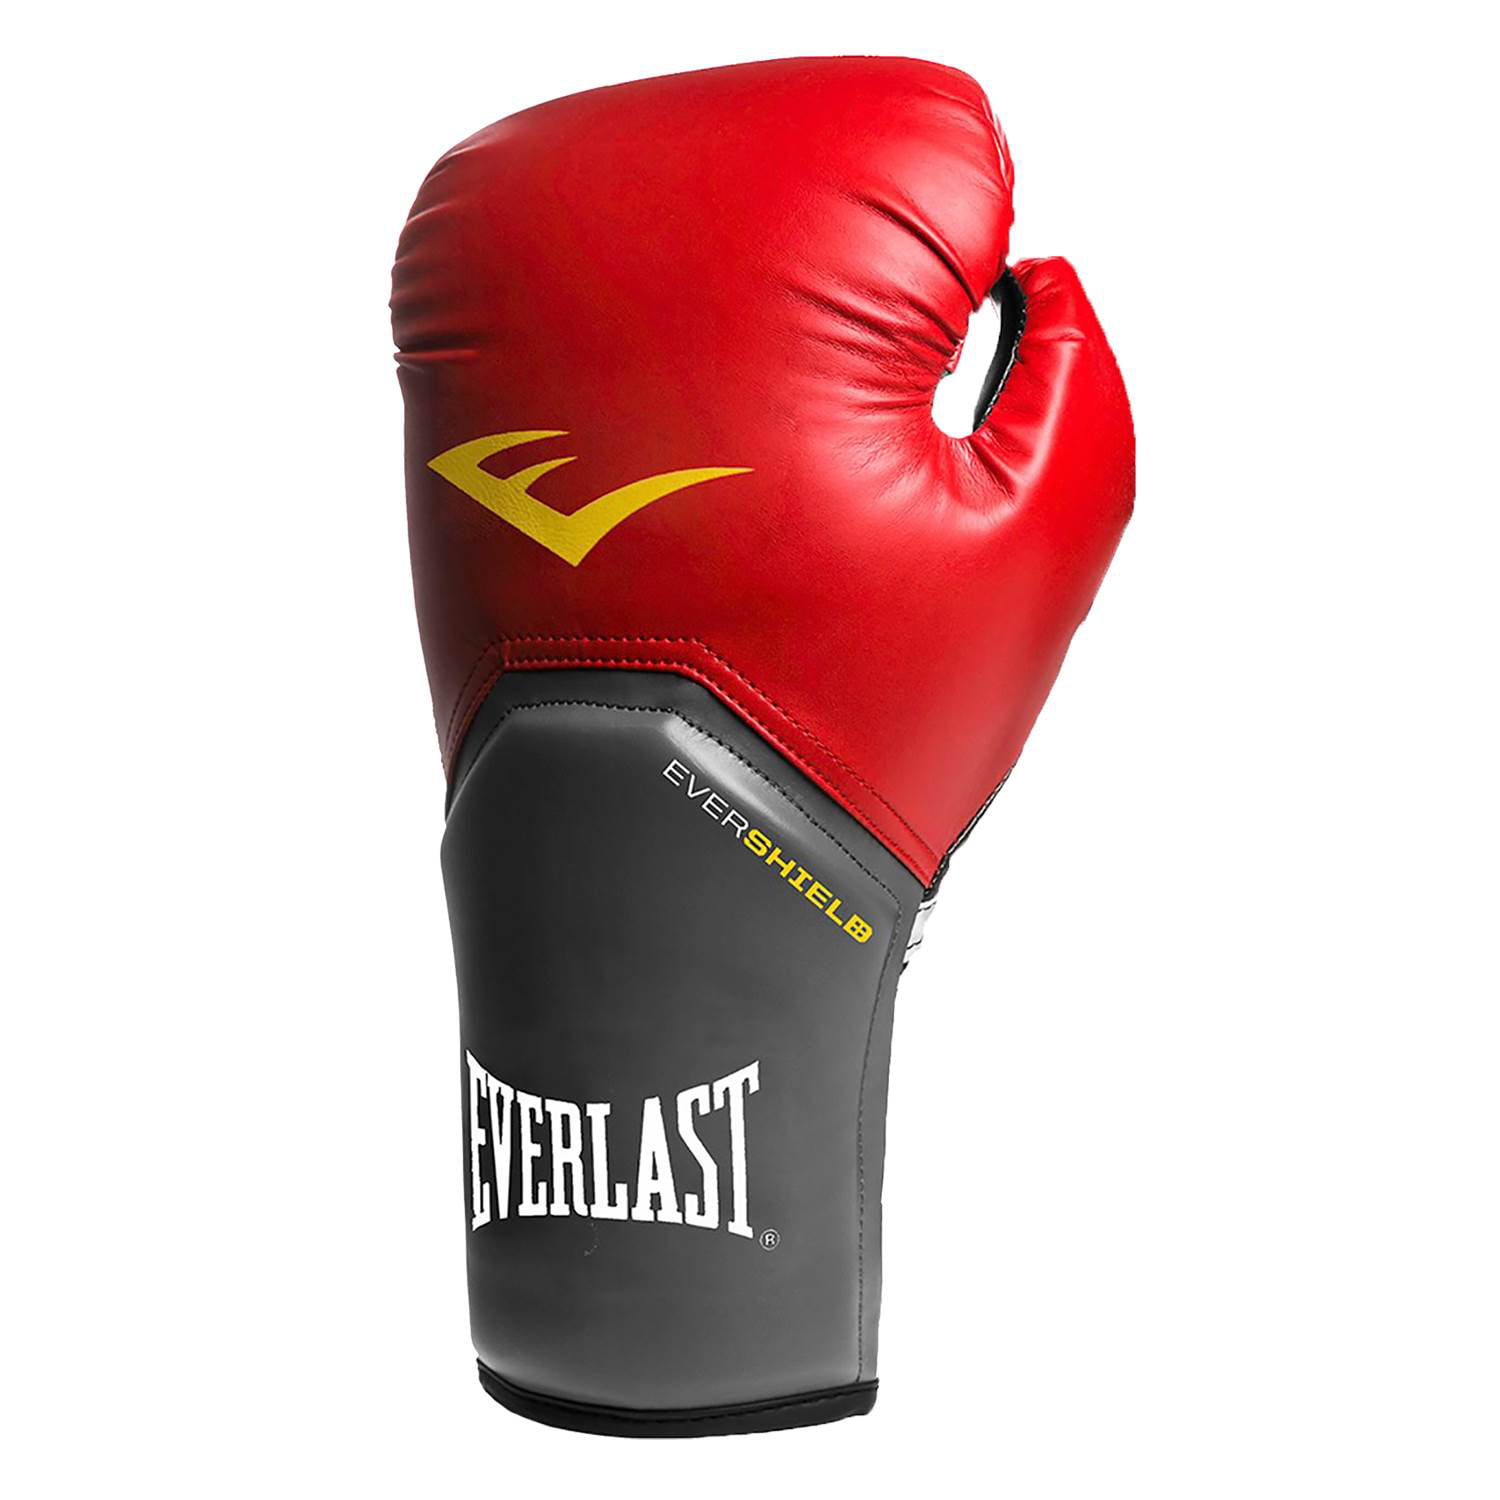 Everlast 14 Oz Pro Style Elite Cardio Kickboxing and Boxing Training ...